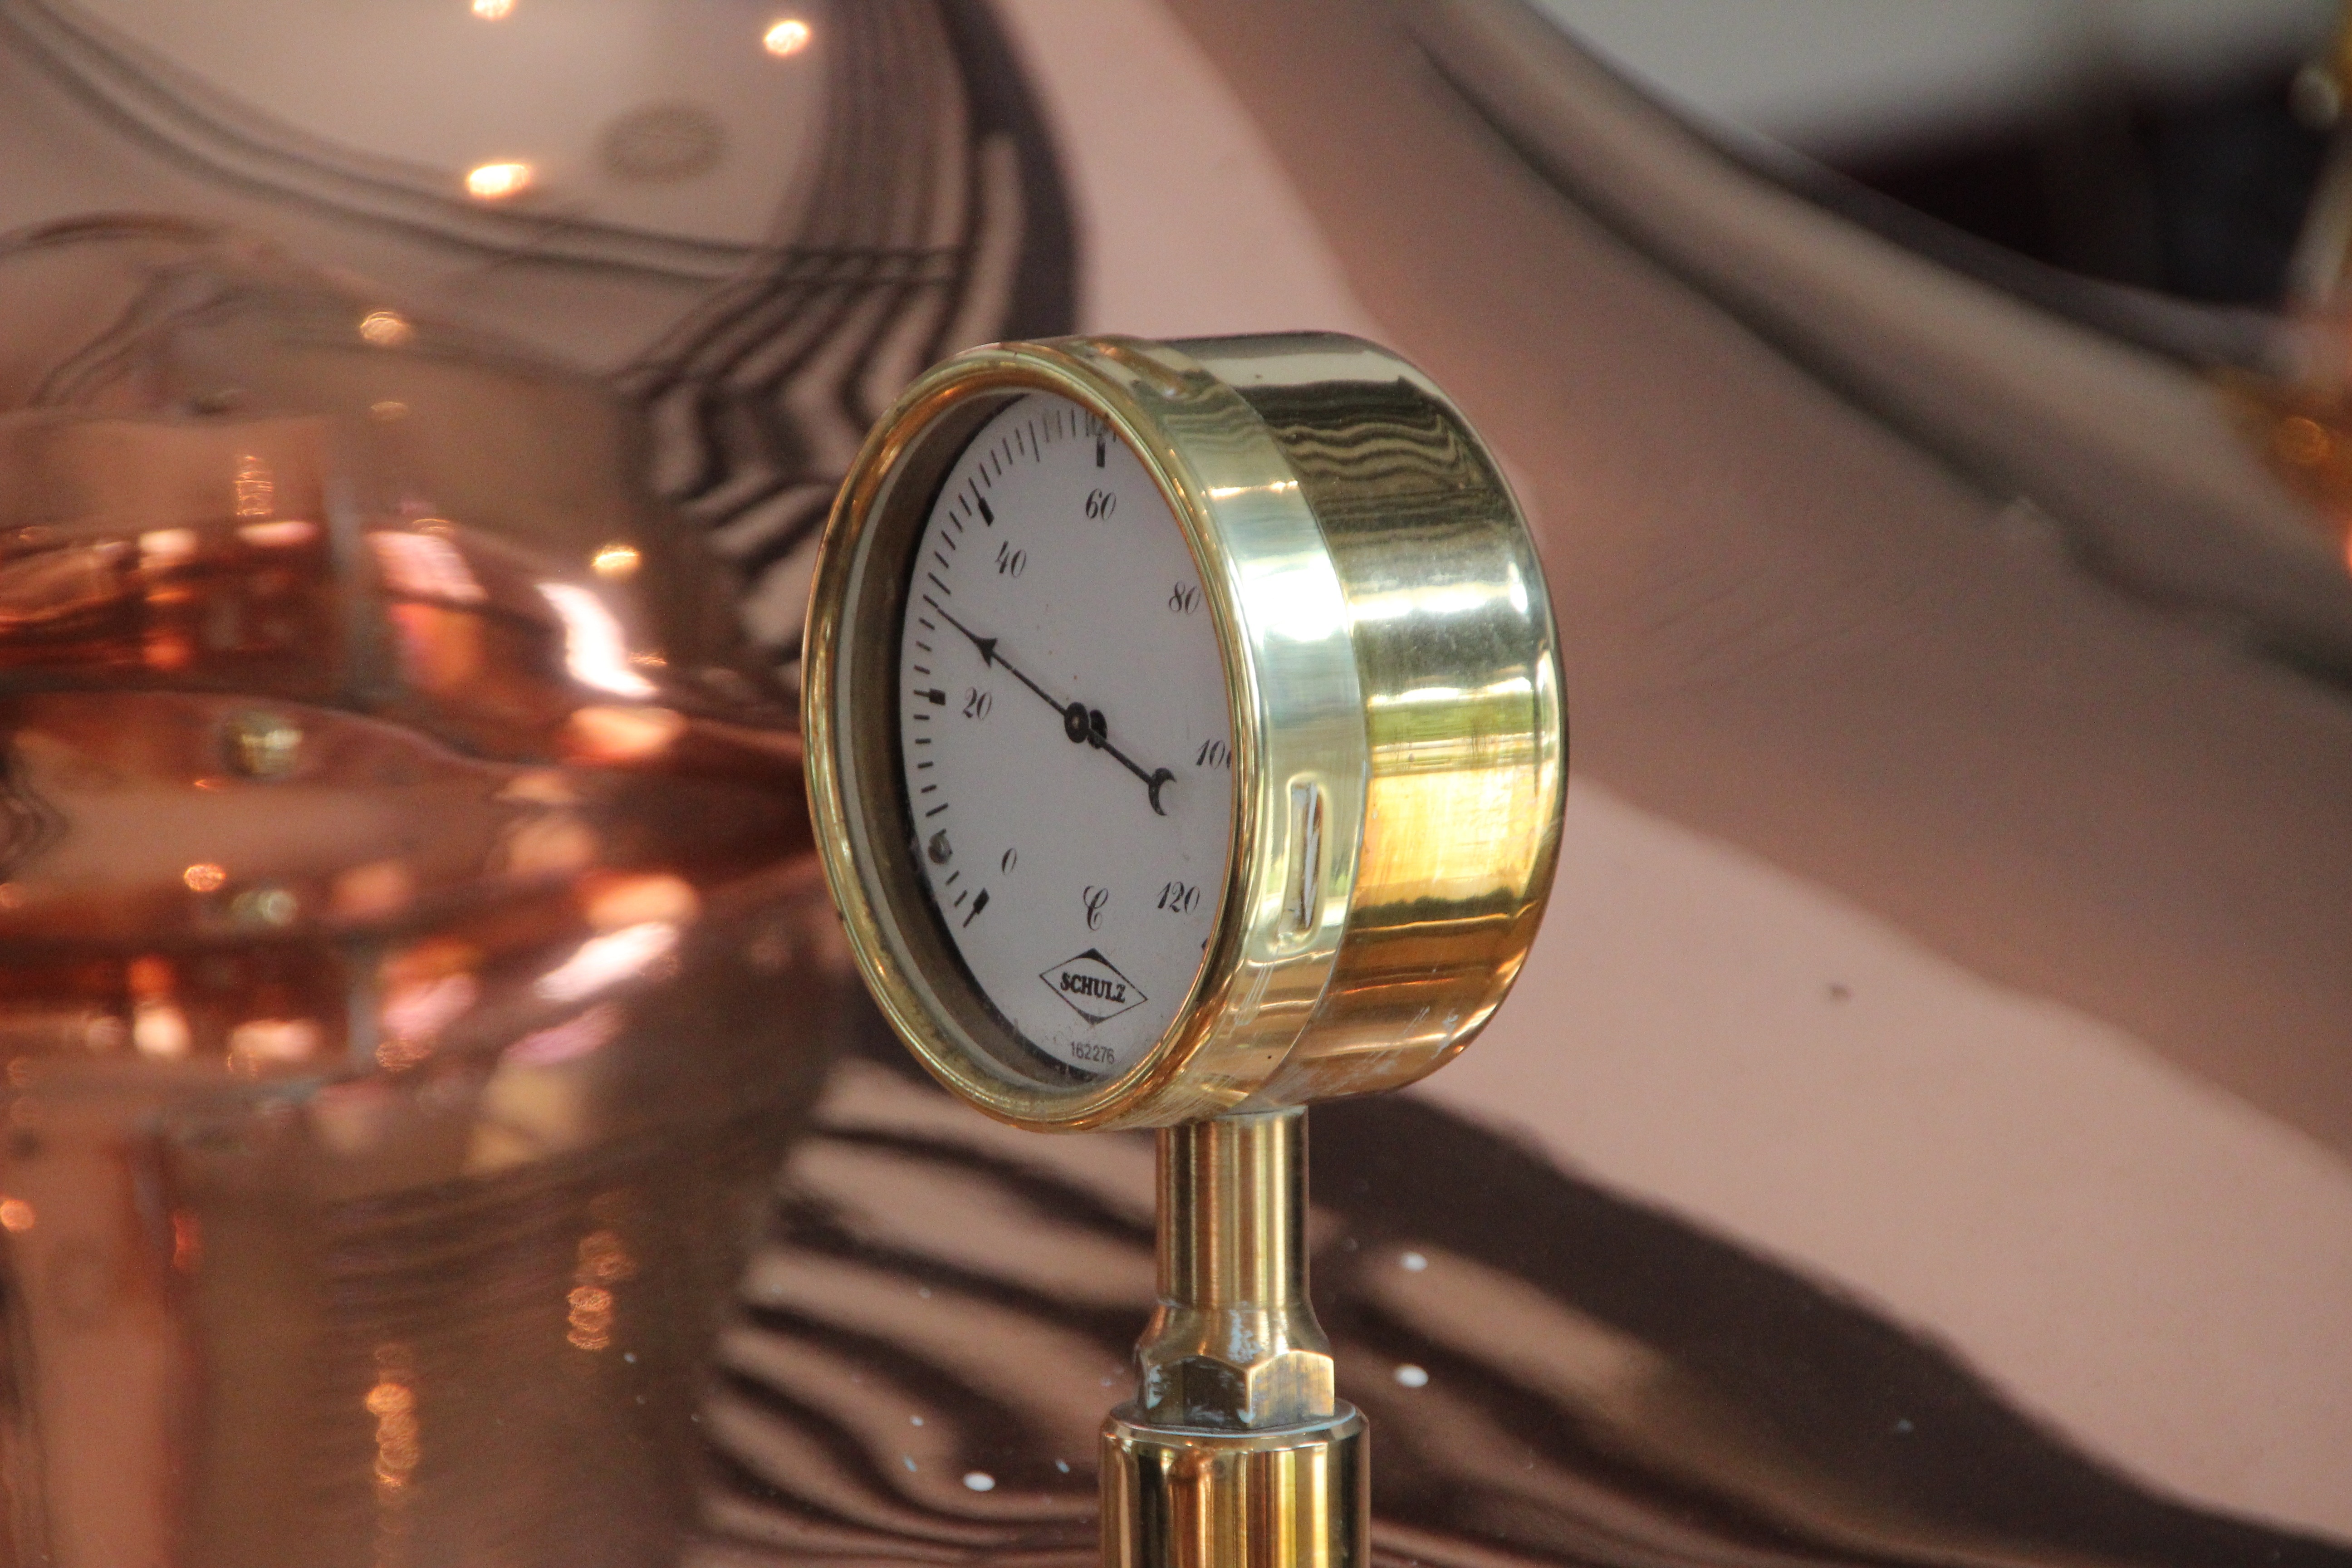 brass pressure gauge